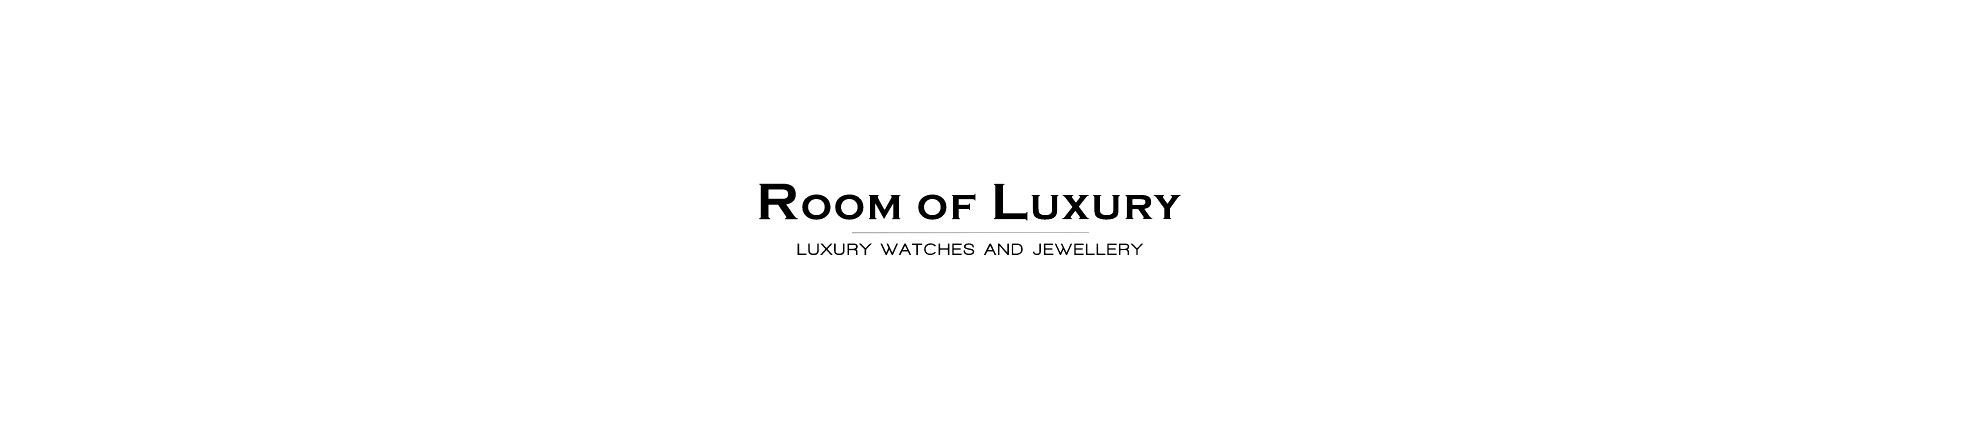 room-of-luxury-2